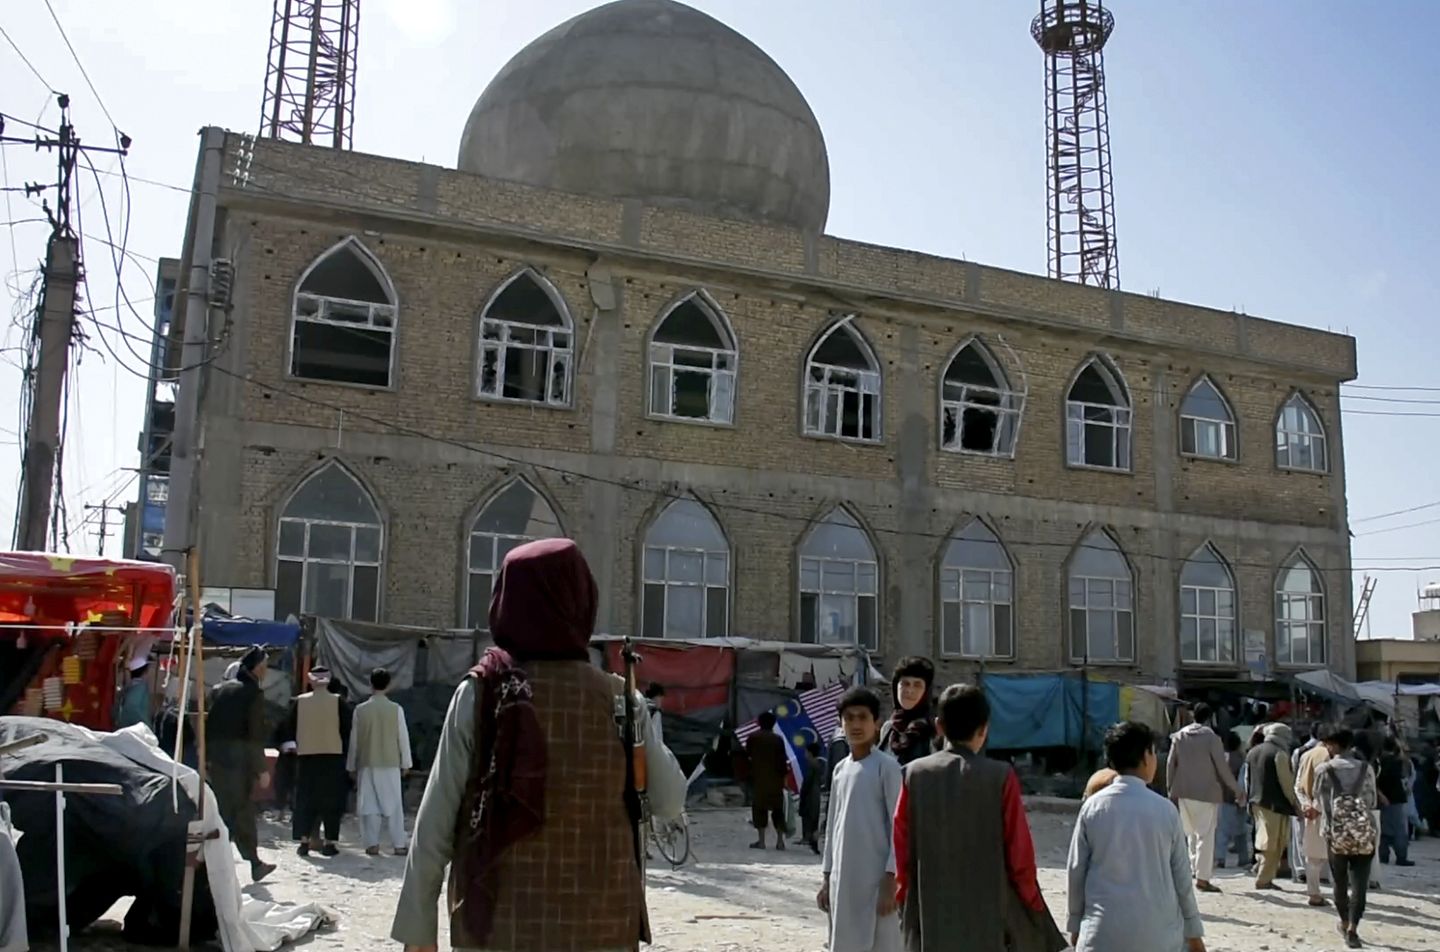 ABD komisyonu, Taliban rejiminin dini özgürlük baskısı konusunda 'endişe' tanımını hak ettiğini söyledi